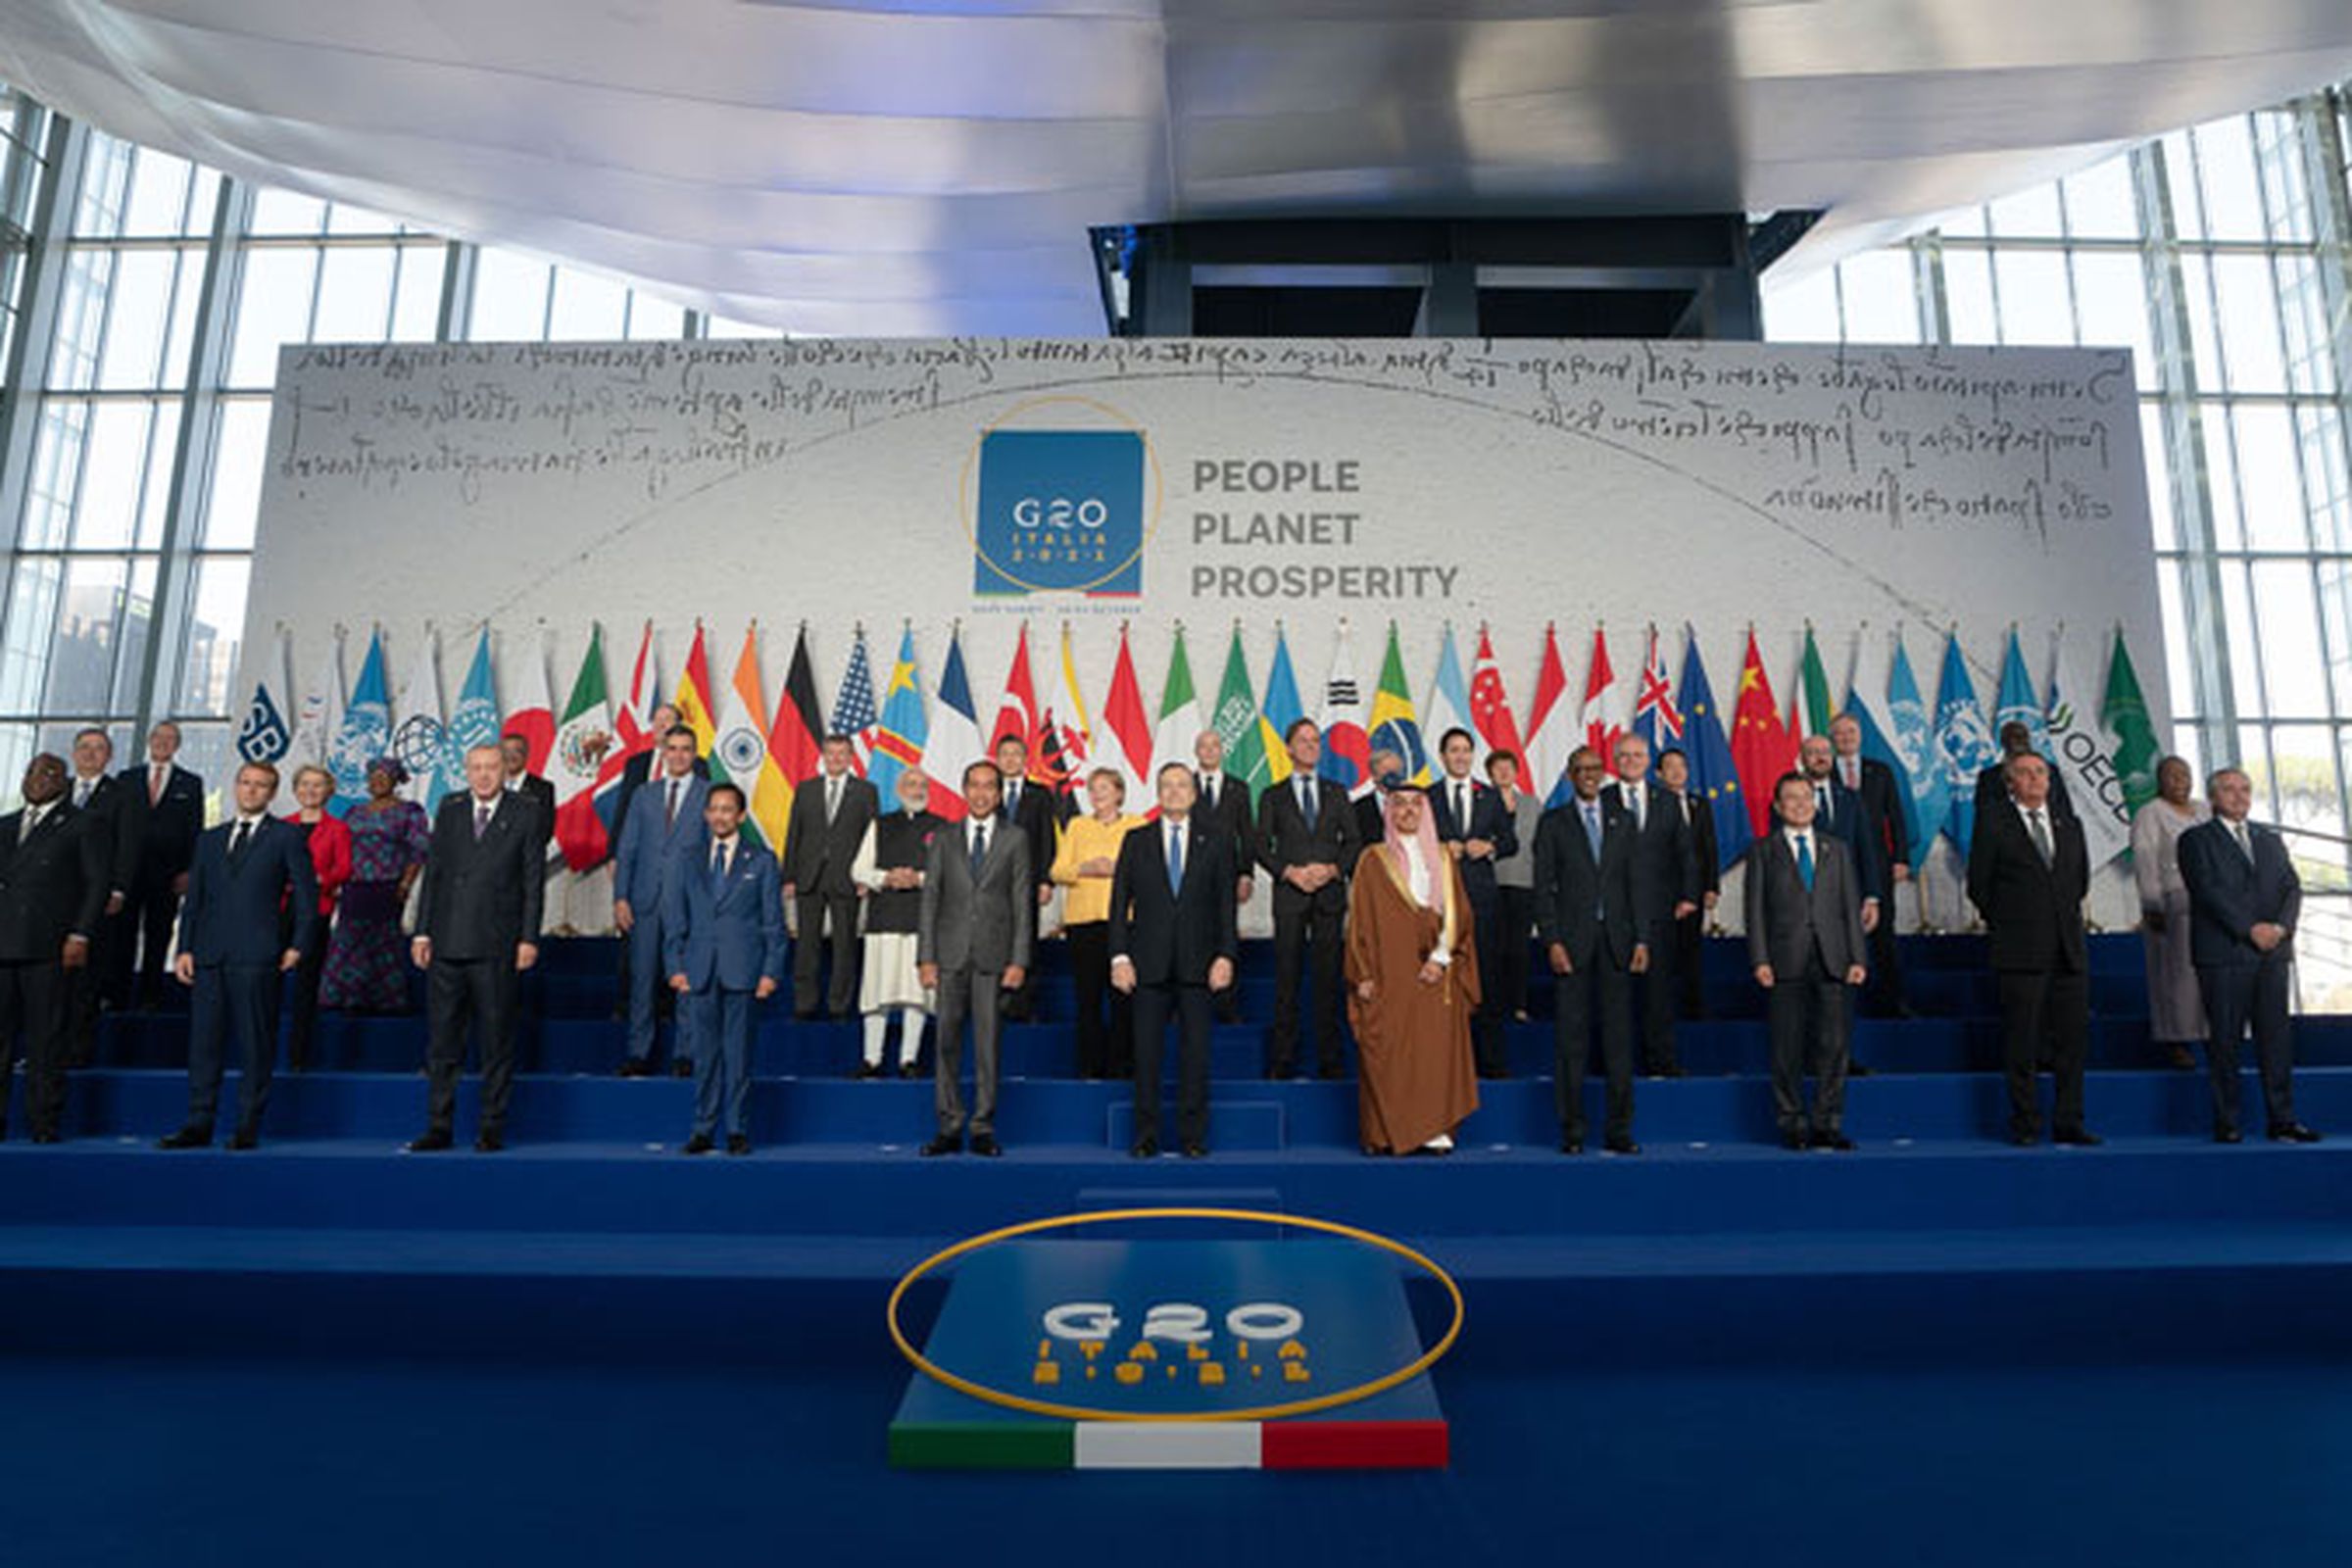 G20 leaders in Rome.